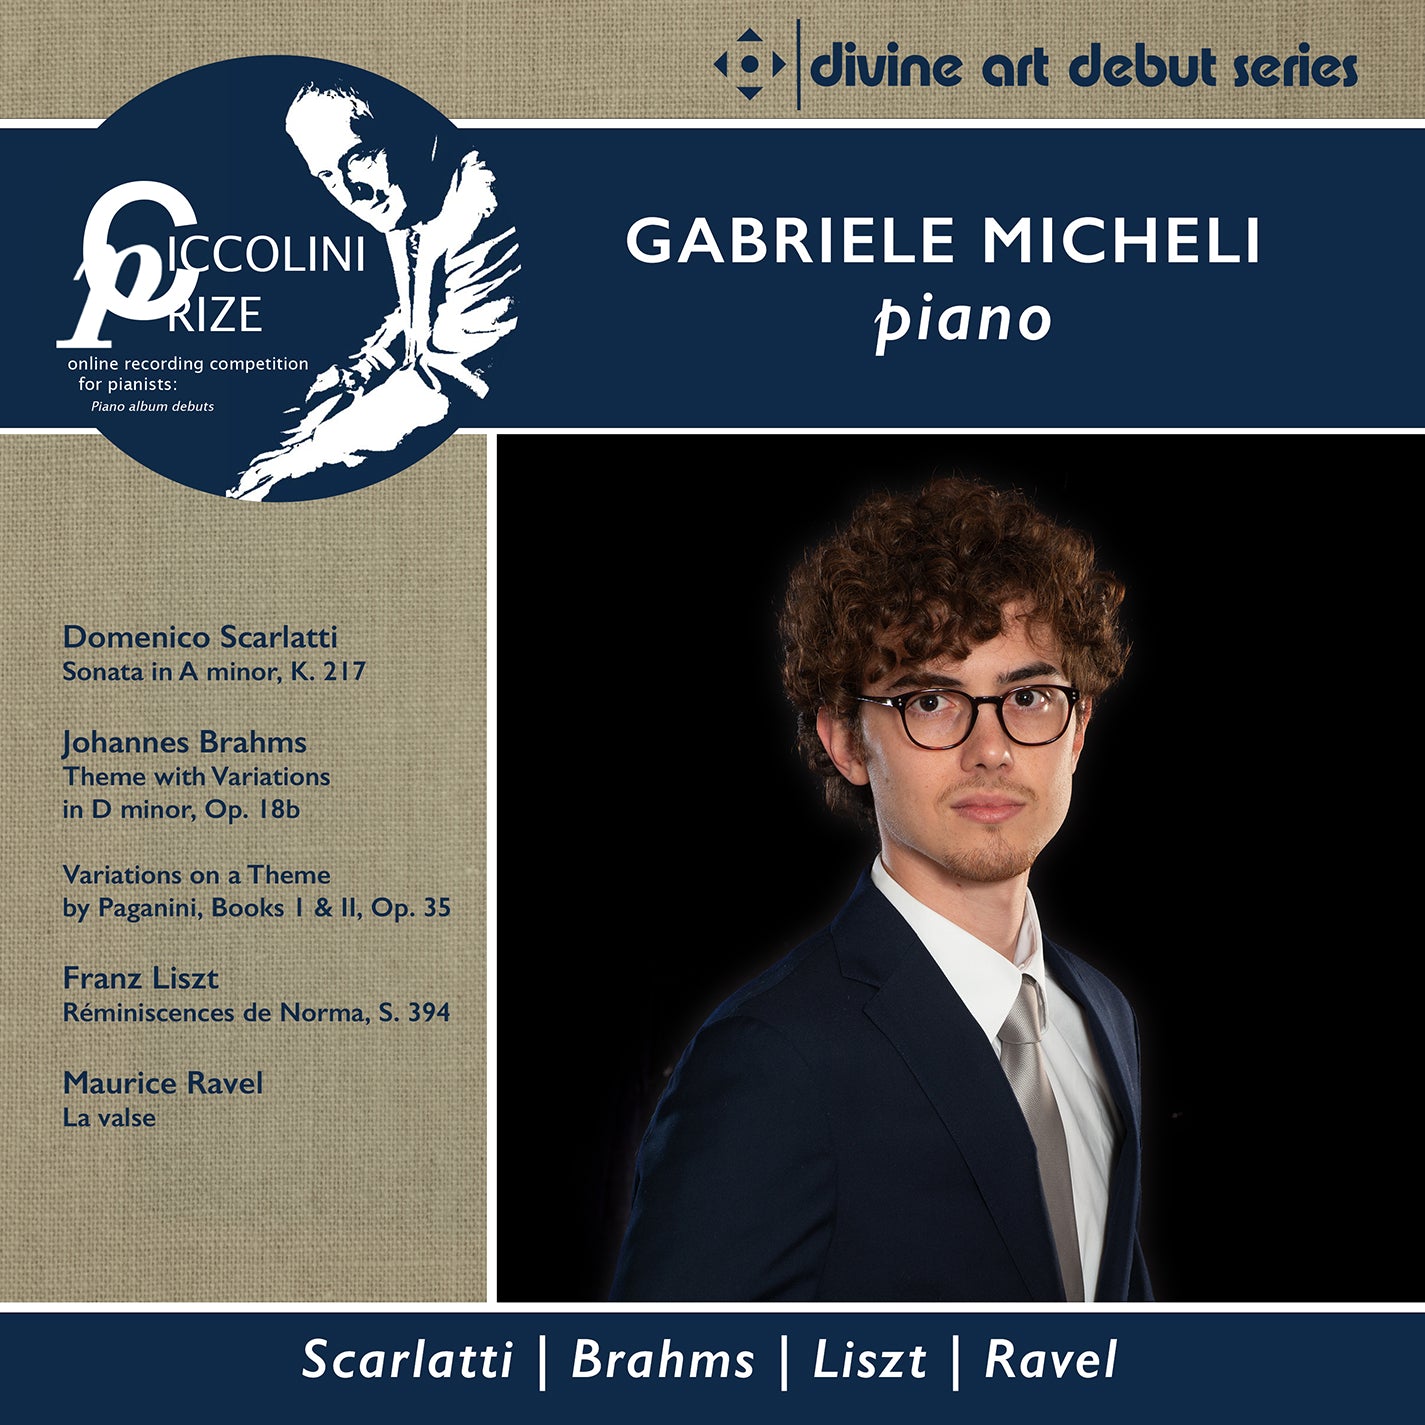 Ciccolini Prizewinner Piano Recital / Gabriele Micheli